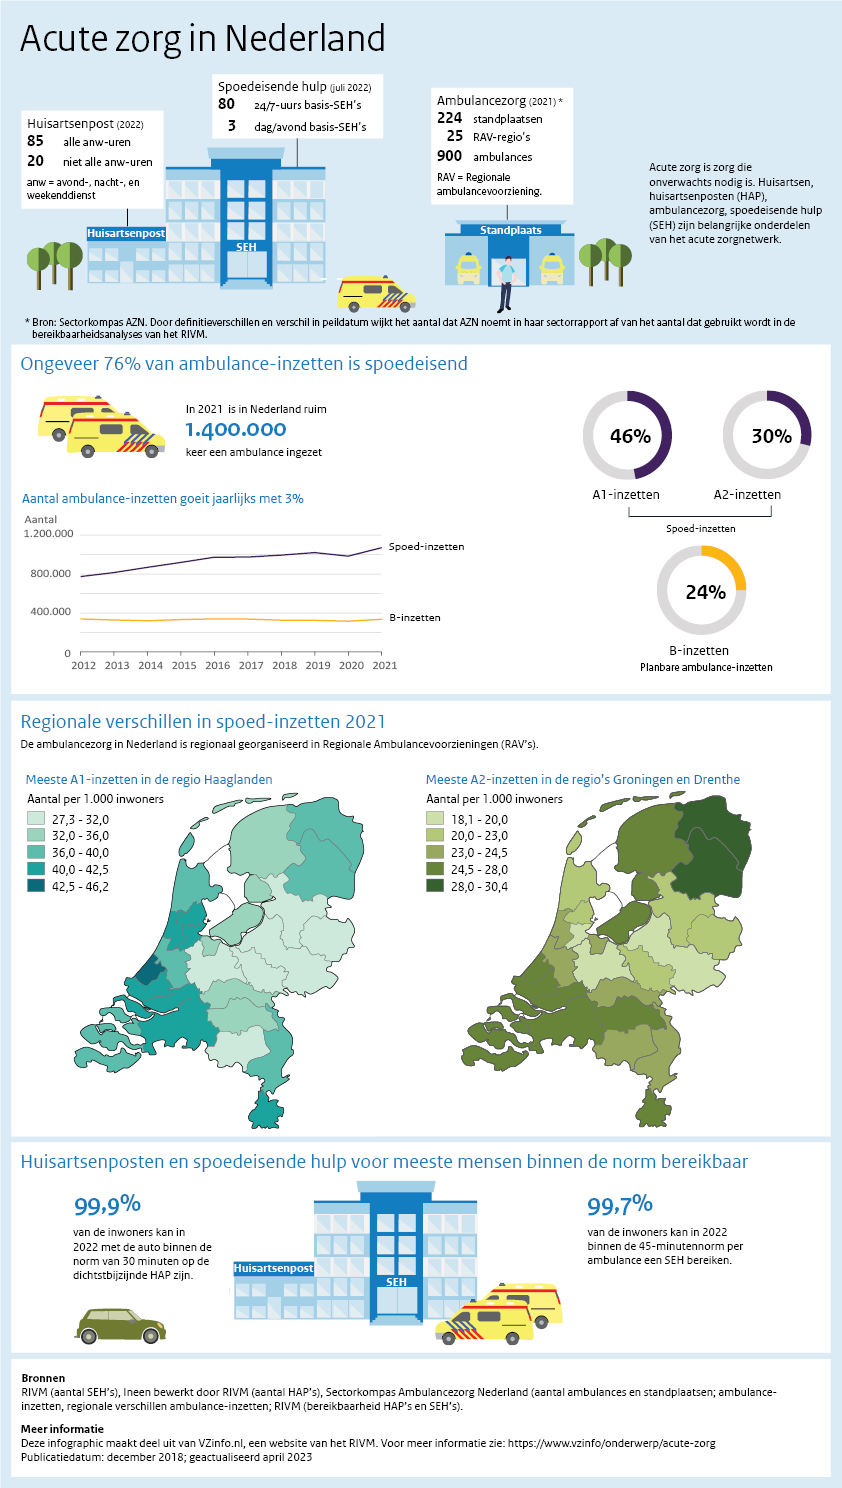 Aantal huisartsenpost (2022): 85 alle anw-uren en 20 niet alle anw-uren. Aantal Spoedeisende hulp locaties (juli 2022): 80 24/7-uurs basis-SEH’s en 3 dag/avond basis-SEH’s. Ambulancezorg (2021):  224 standplaatsen, 25 RAV-regio’s en 900 ambulances. In 2021  is in Nederland ruim 1.400.000 keer een ambulance ingezet. 46% A1-inzetten, 30% A2-inzetten en 24% B-inzetten. In de periode 2012-2021 is het aantal ambulance-inzetten jaarlijks met 3% gegroeid. Regionale verschillen in spoed-inzetten 2021: Meeste A1-inz